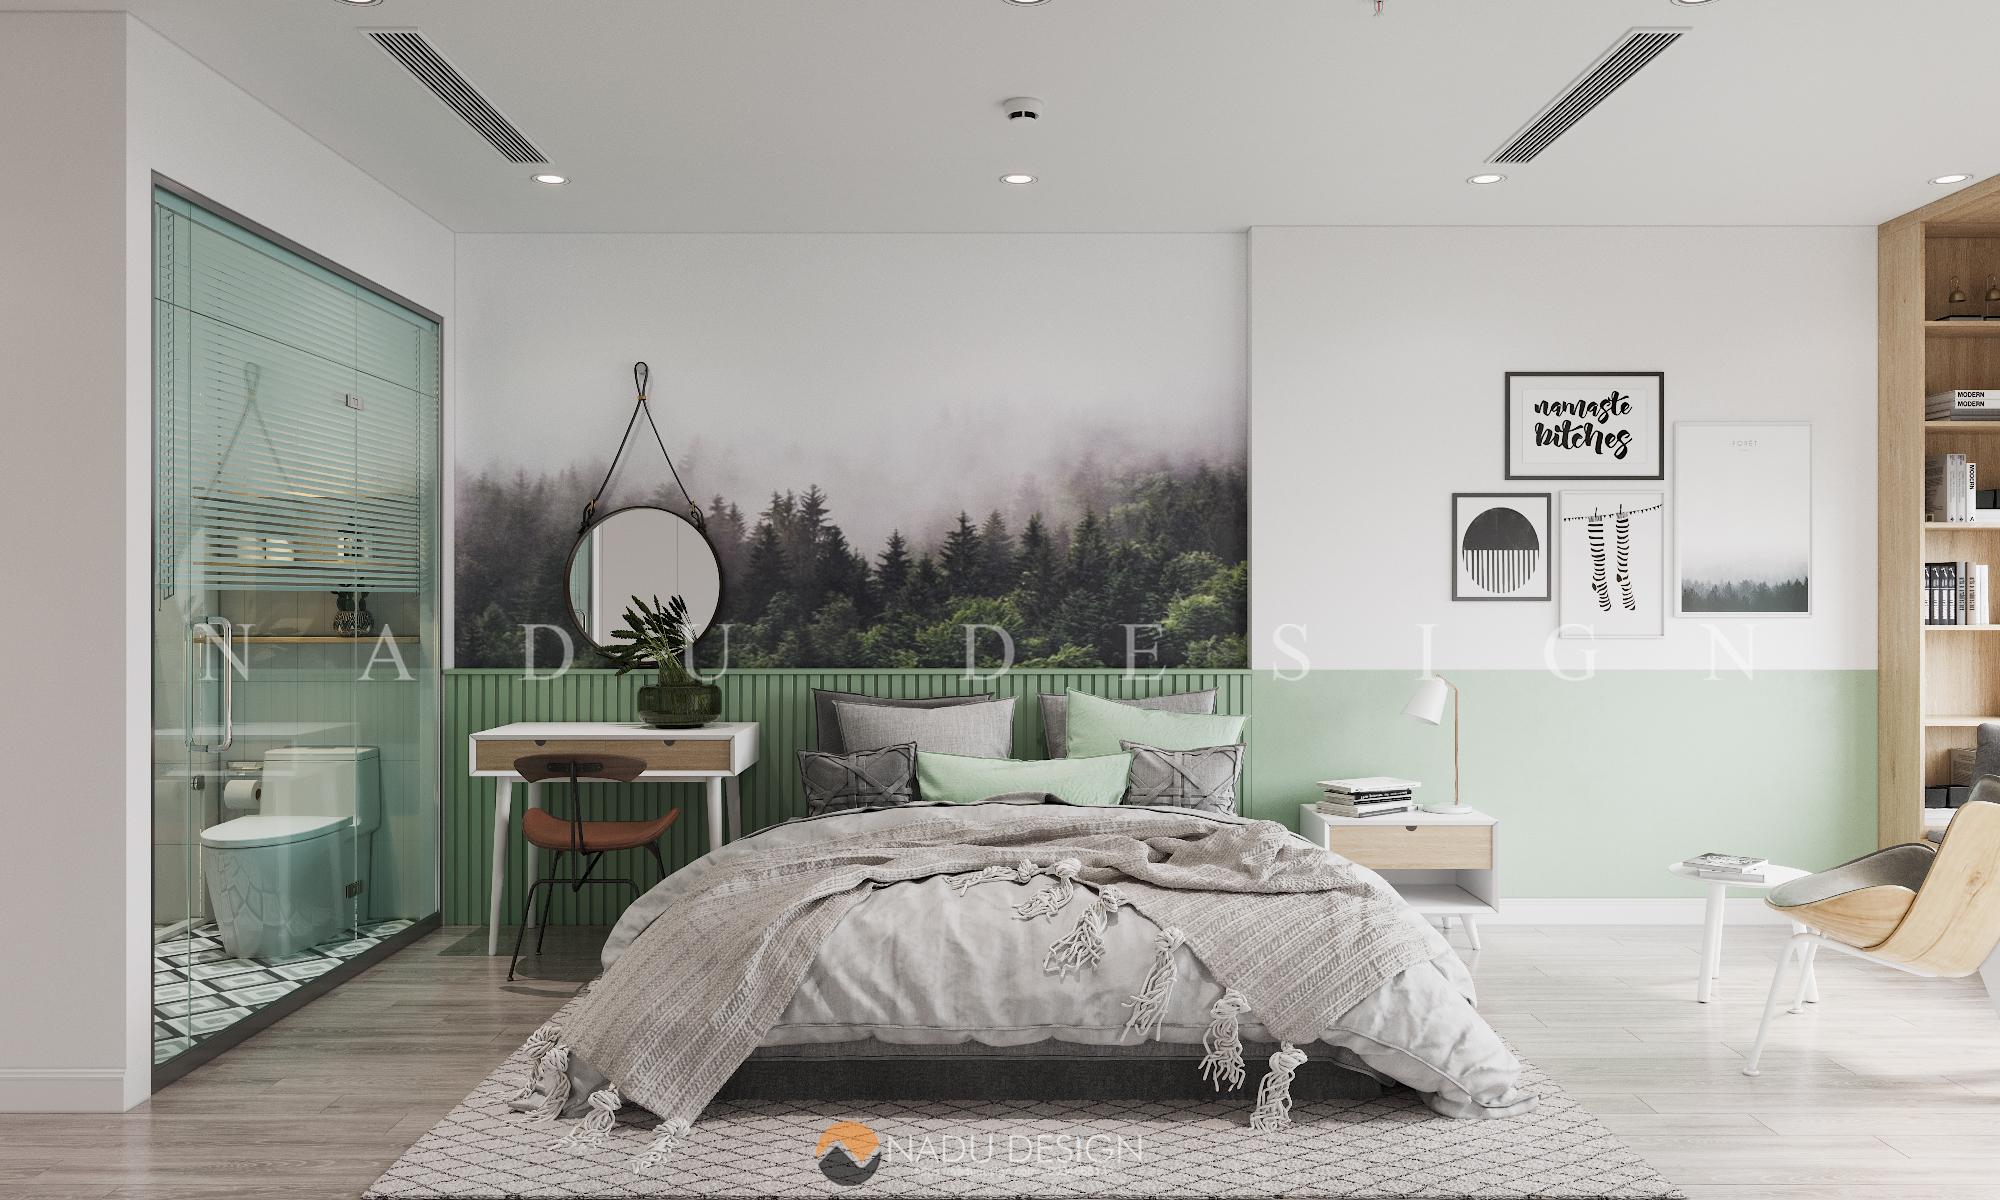 Một không gian sống đầy đủ tiện nghi với thiết kế nội thất tinh tế chắc chắn sẽ khiến bạn hài lòng. Hãy xem ngay hình ảnh căn hộ để cảm nhận hơn về sự đẹp mắt của thiết kế này.